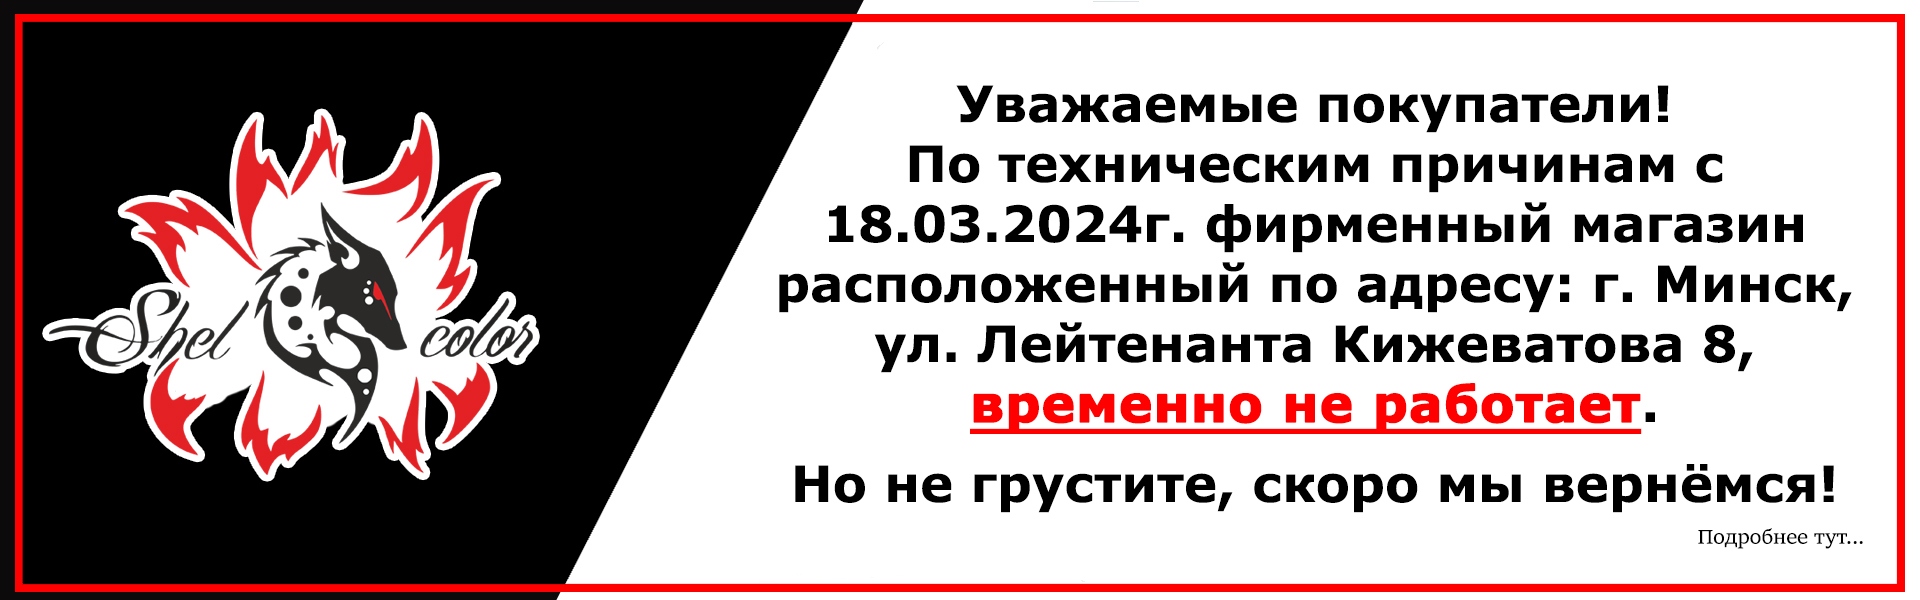 Уважаемые покупатели!  По техническим причинам с 18.03.2024г. фирменный магазин расположенный по адресу: г. Минск, ул. Лейтенанта Кижеватова 8, временно не работает.  Но не грустите, скоро мы вернёмся!